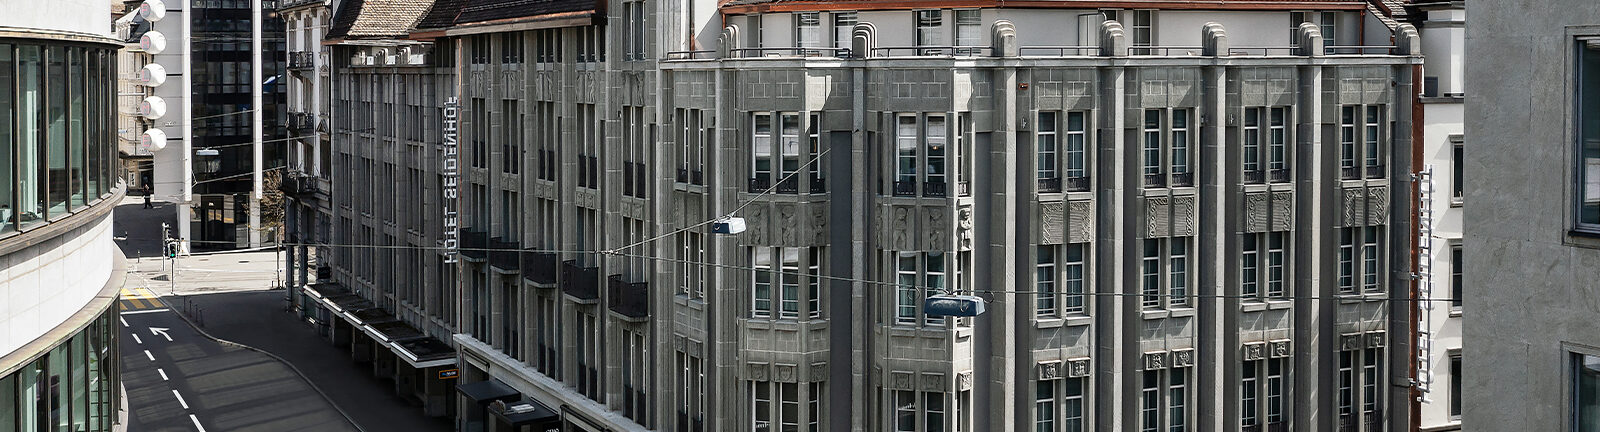 Umbau und Sanierung Hotel Seidenhof in Zürich Featured Image